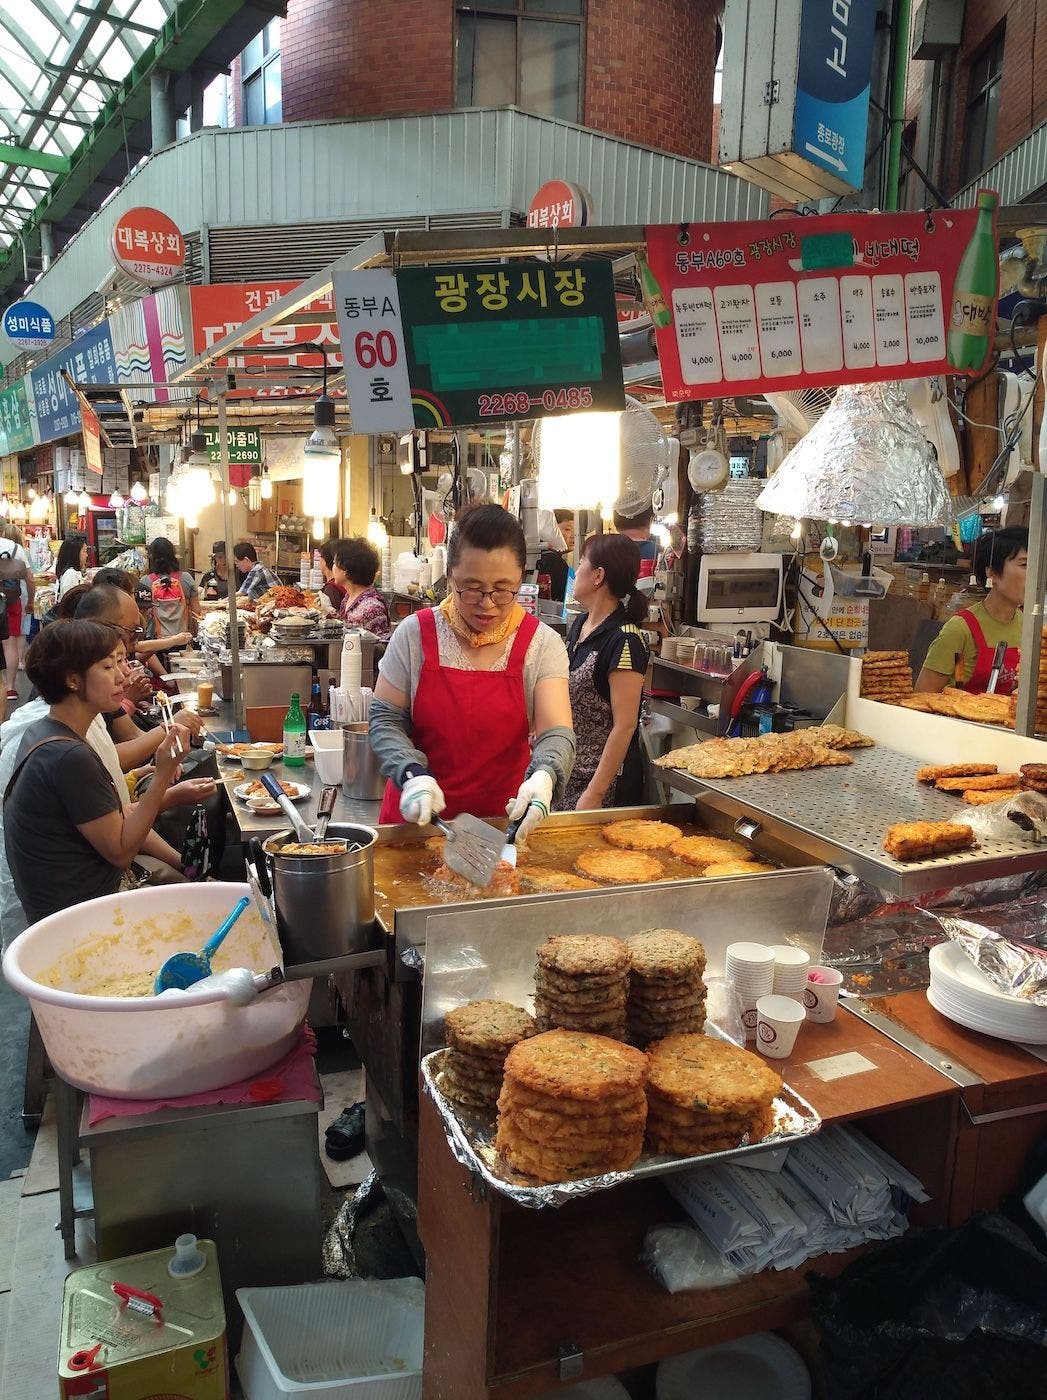 Preparan pajong en el mercado de Gwangjang. Foto: Sergio Cabrera.